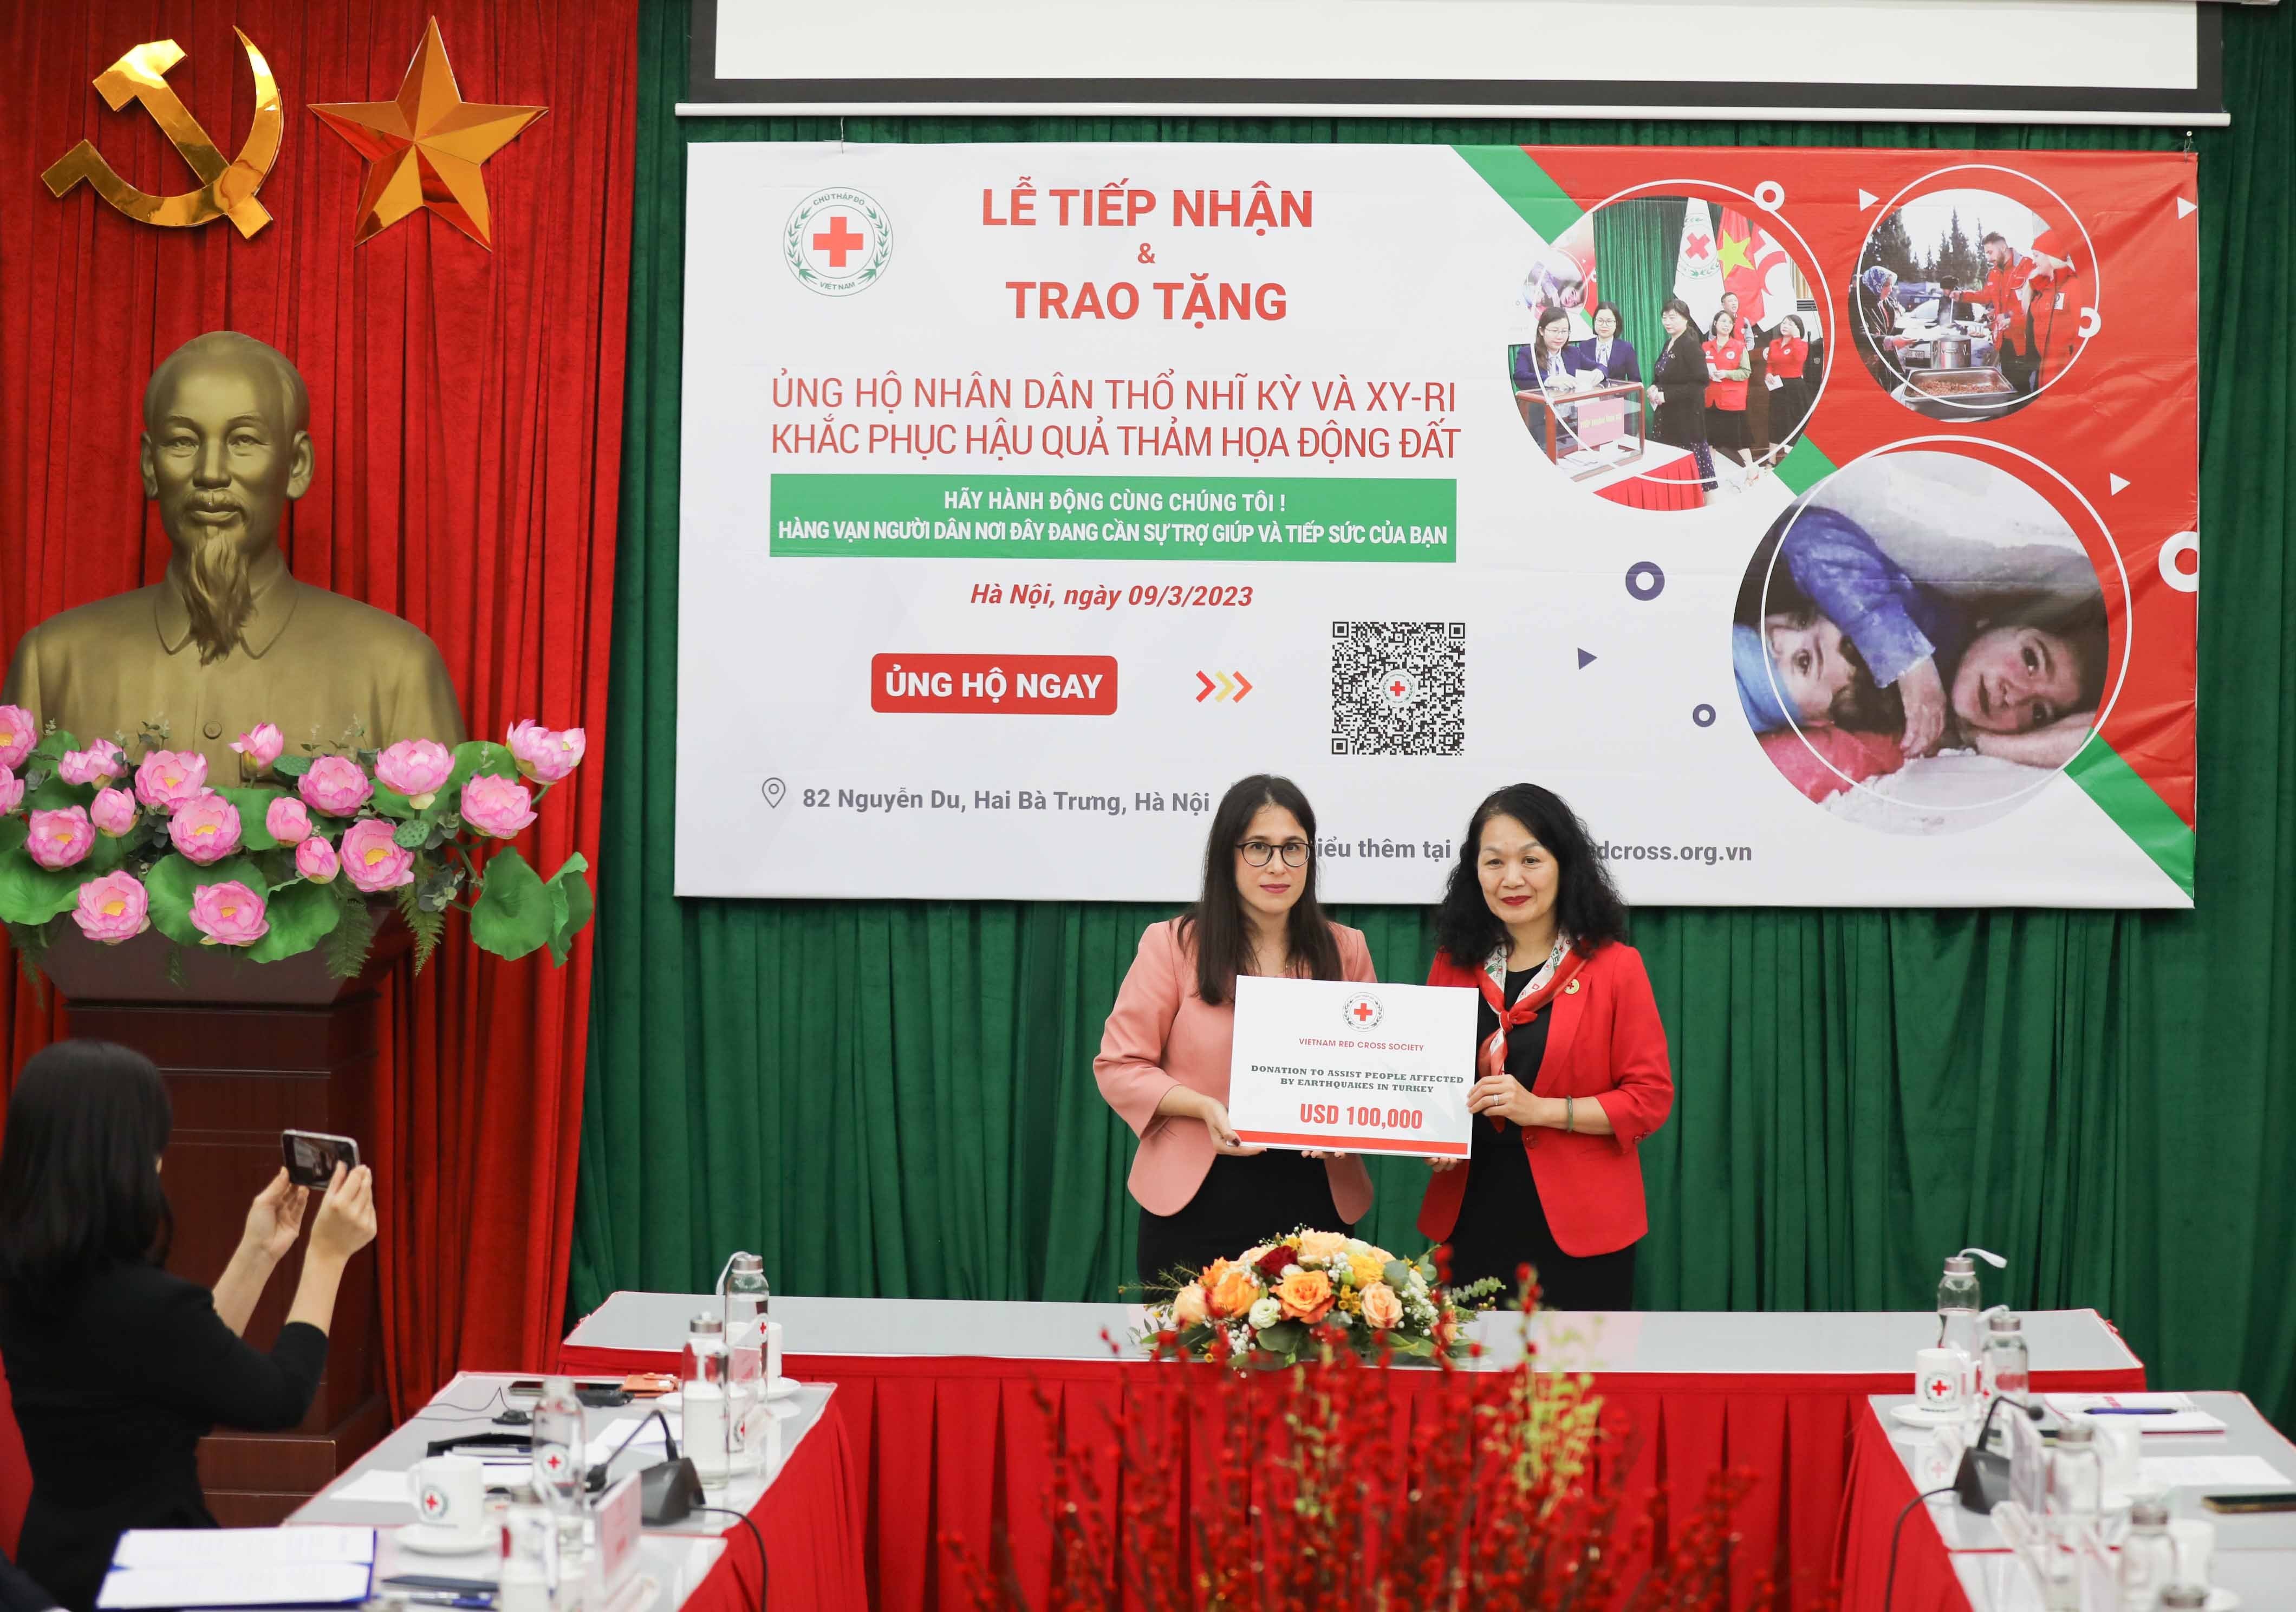 Hội Chữ thập đỏ Việt Nam trao tặng 200.000 USD hỗ trợ người dân Thổ Nhĩ Kỳ và Xy-ri và tiếp nhận ủng hộ (đợt 2)